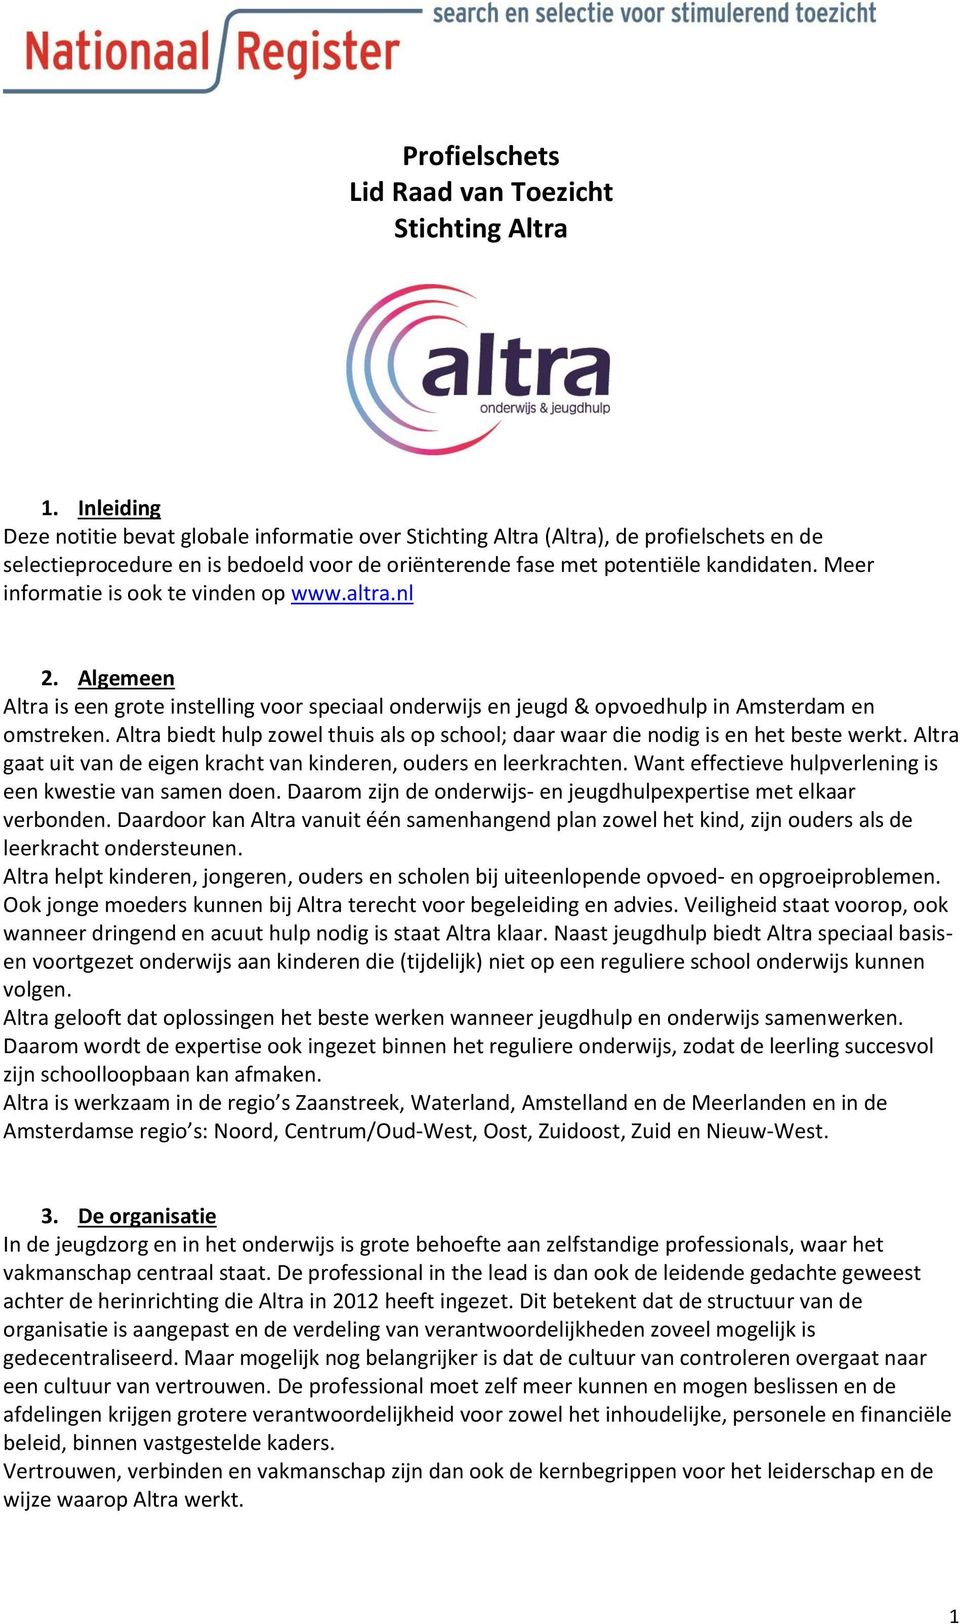 Meer informatie is ook te vinden op www.altra.nl 2. Algemeen Altra is een grote instelling voor speciaal onderwijs en jeugd & opvoedhulp in Amsterdam en omstreken.